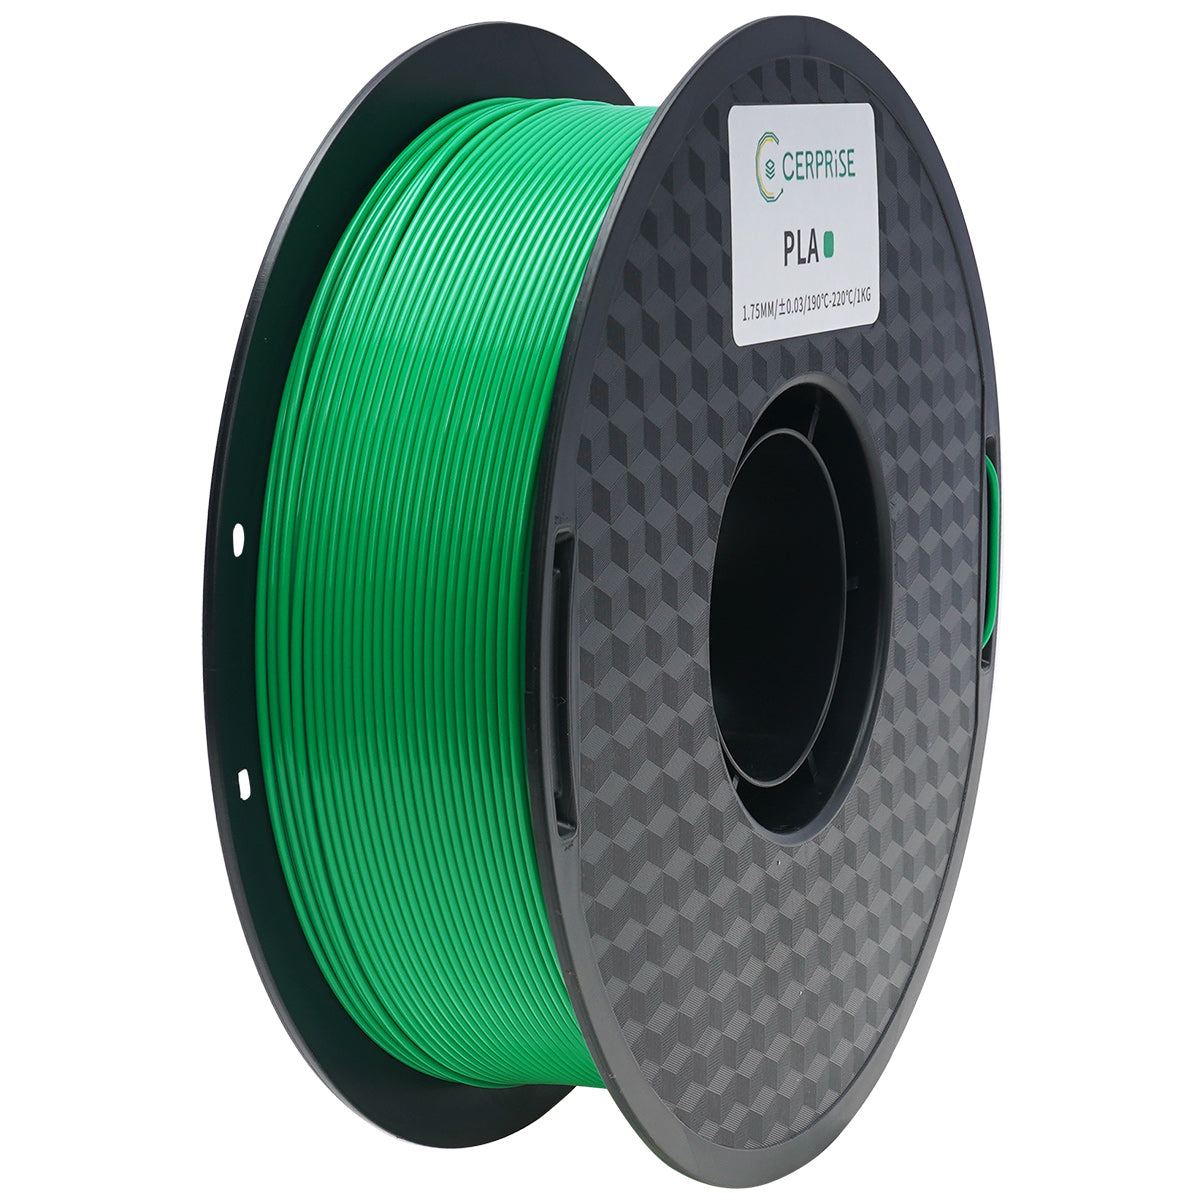 Silk PLA/PLA 1.75mm Filament 1kg (MOQ:6 rolls, can mix color)